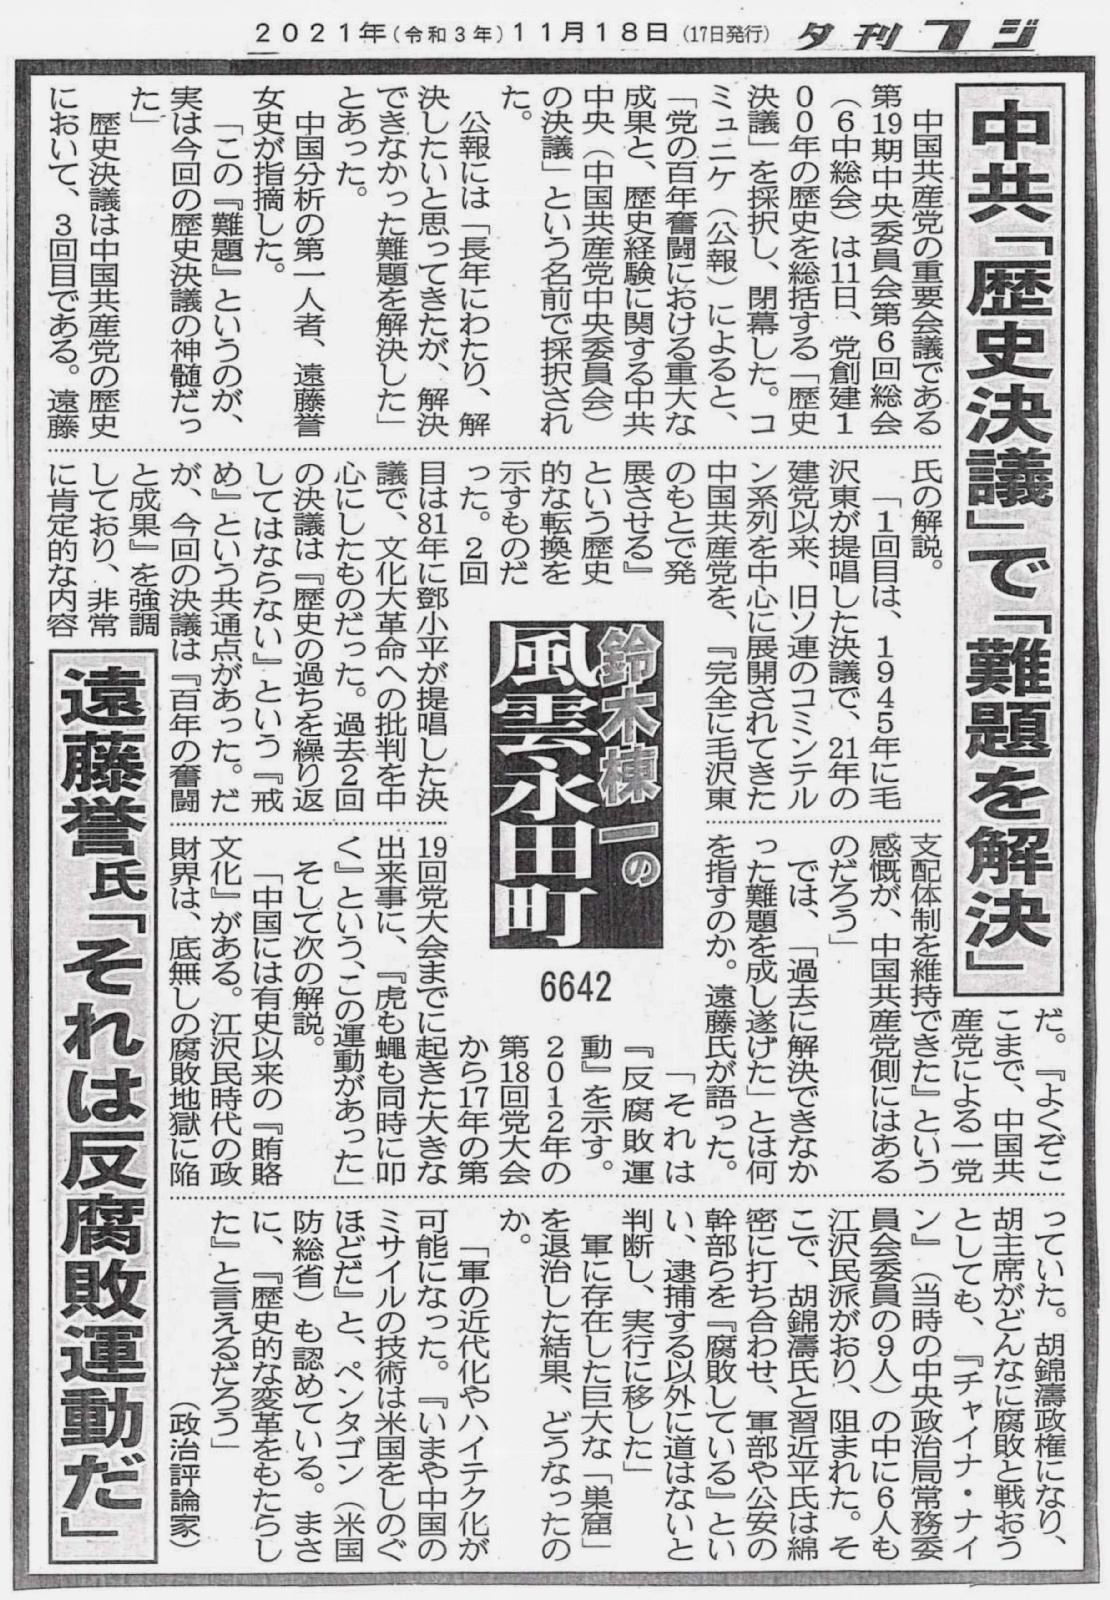 中共「歴史決議」で「難題を解決」遠藤誉氏「それは反腐敗運動だ」